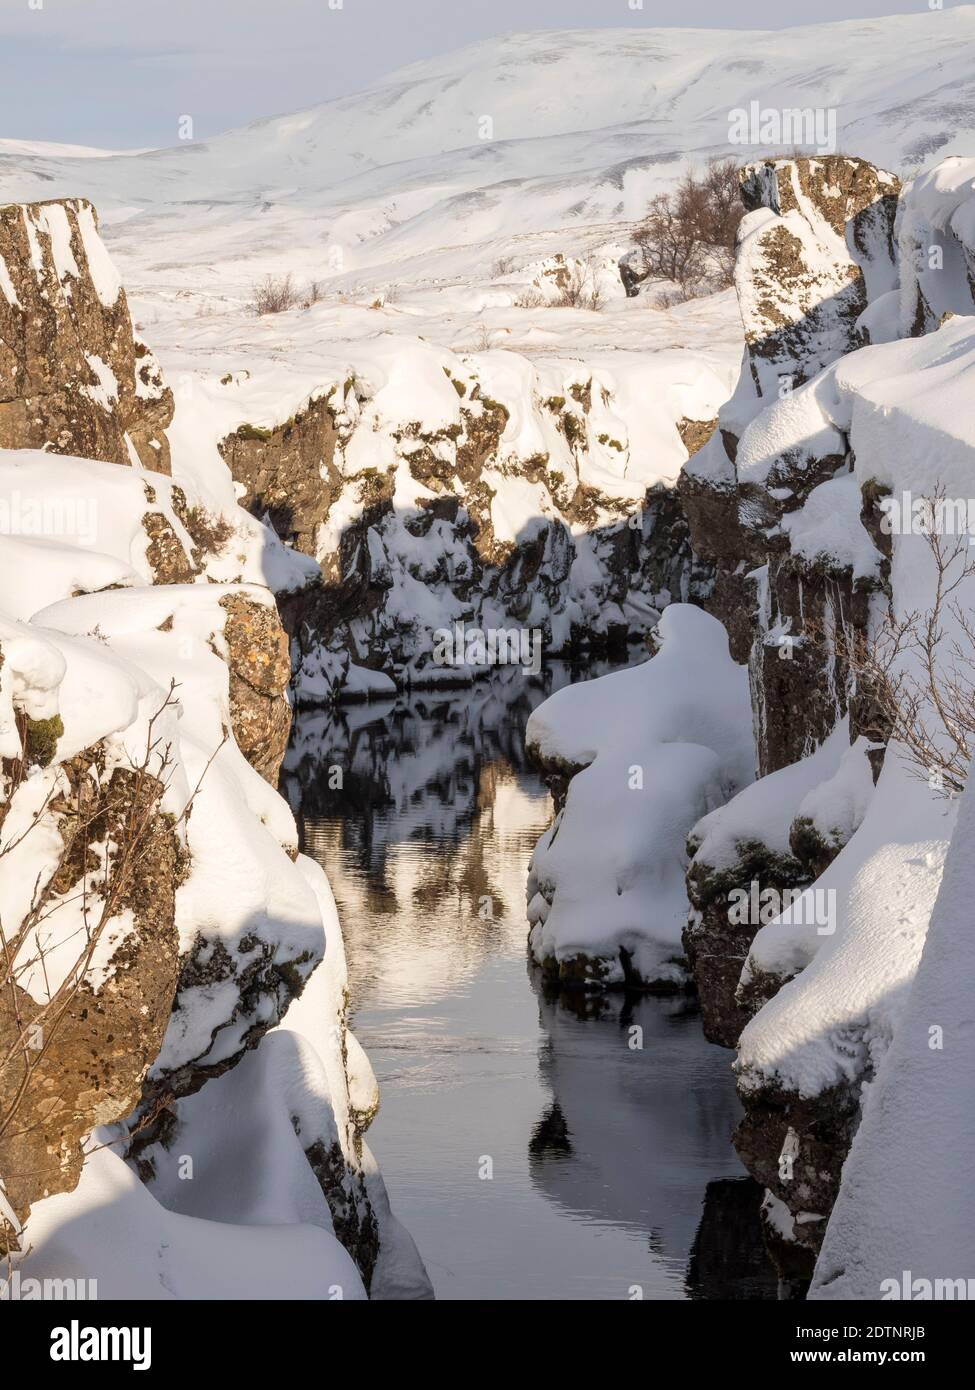 Flosagja Schlucht. Thingvellir Nationalpark bedeckt mit Neuschnee in Island im Winter. Thingvellir ist Teil des UNESCO-Weltkulturerbes. Nördliche Eu Stockfoto